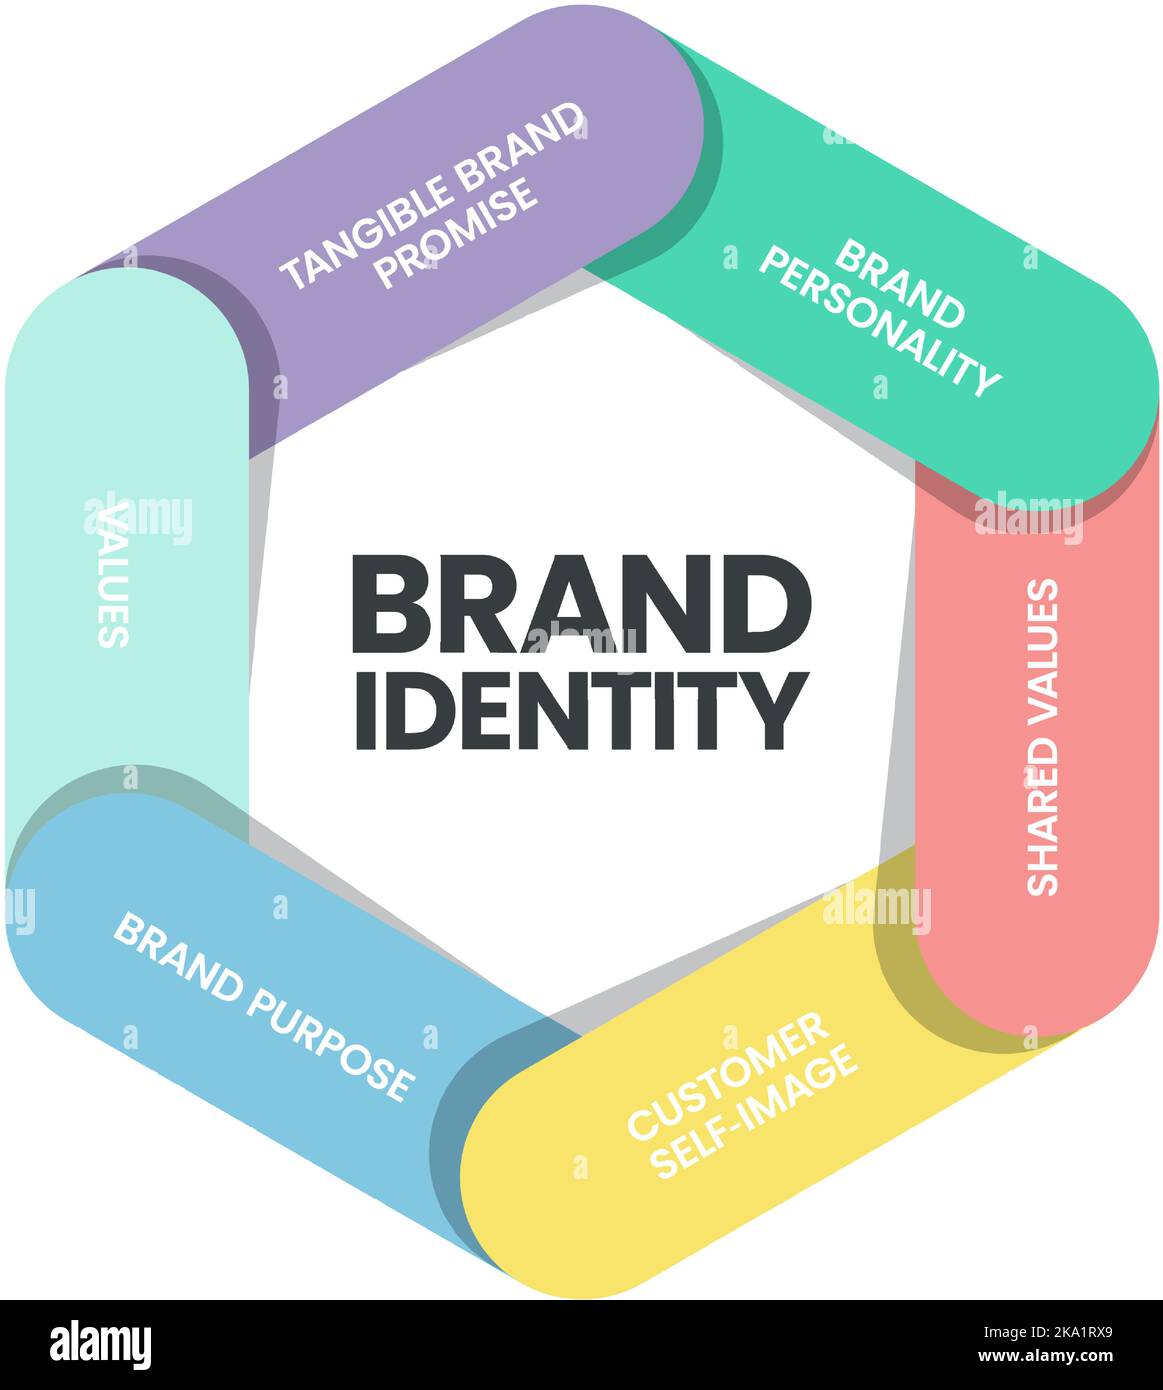 Die Infografik zur Markenidentität ist ein digitales Marketingkonzept in 6 Elementen, um die Marke in den Köpfen der Verbraucher zu unterscheiden, z. B. die Markenpersönlichkeit, s. Stock Vektor